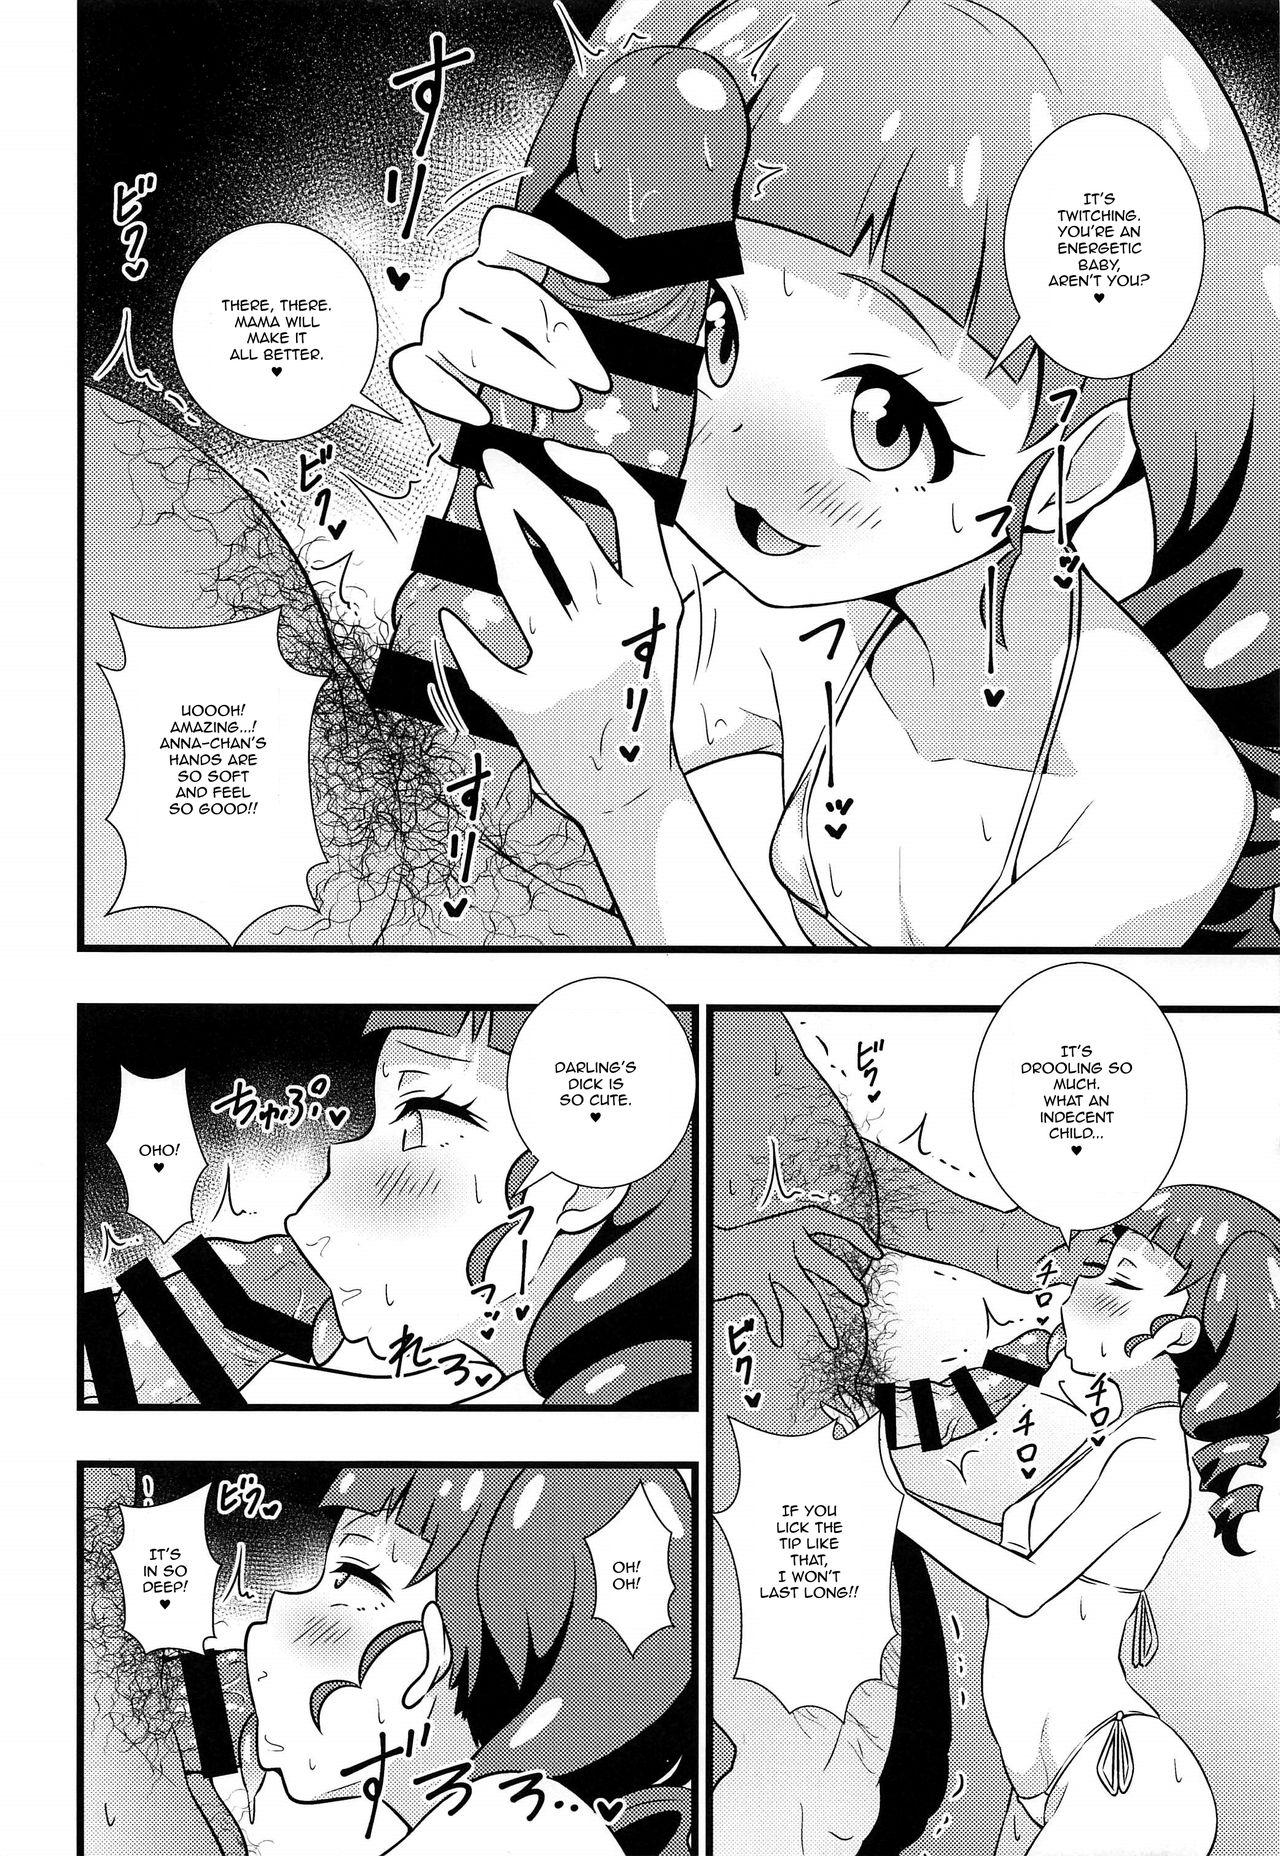 Free Rough Sex Anna-chan no Hanayome Shugyou - Kiratto pri chan Machine - Page 5